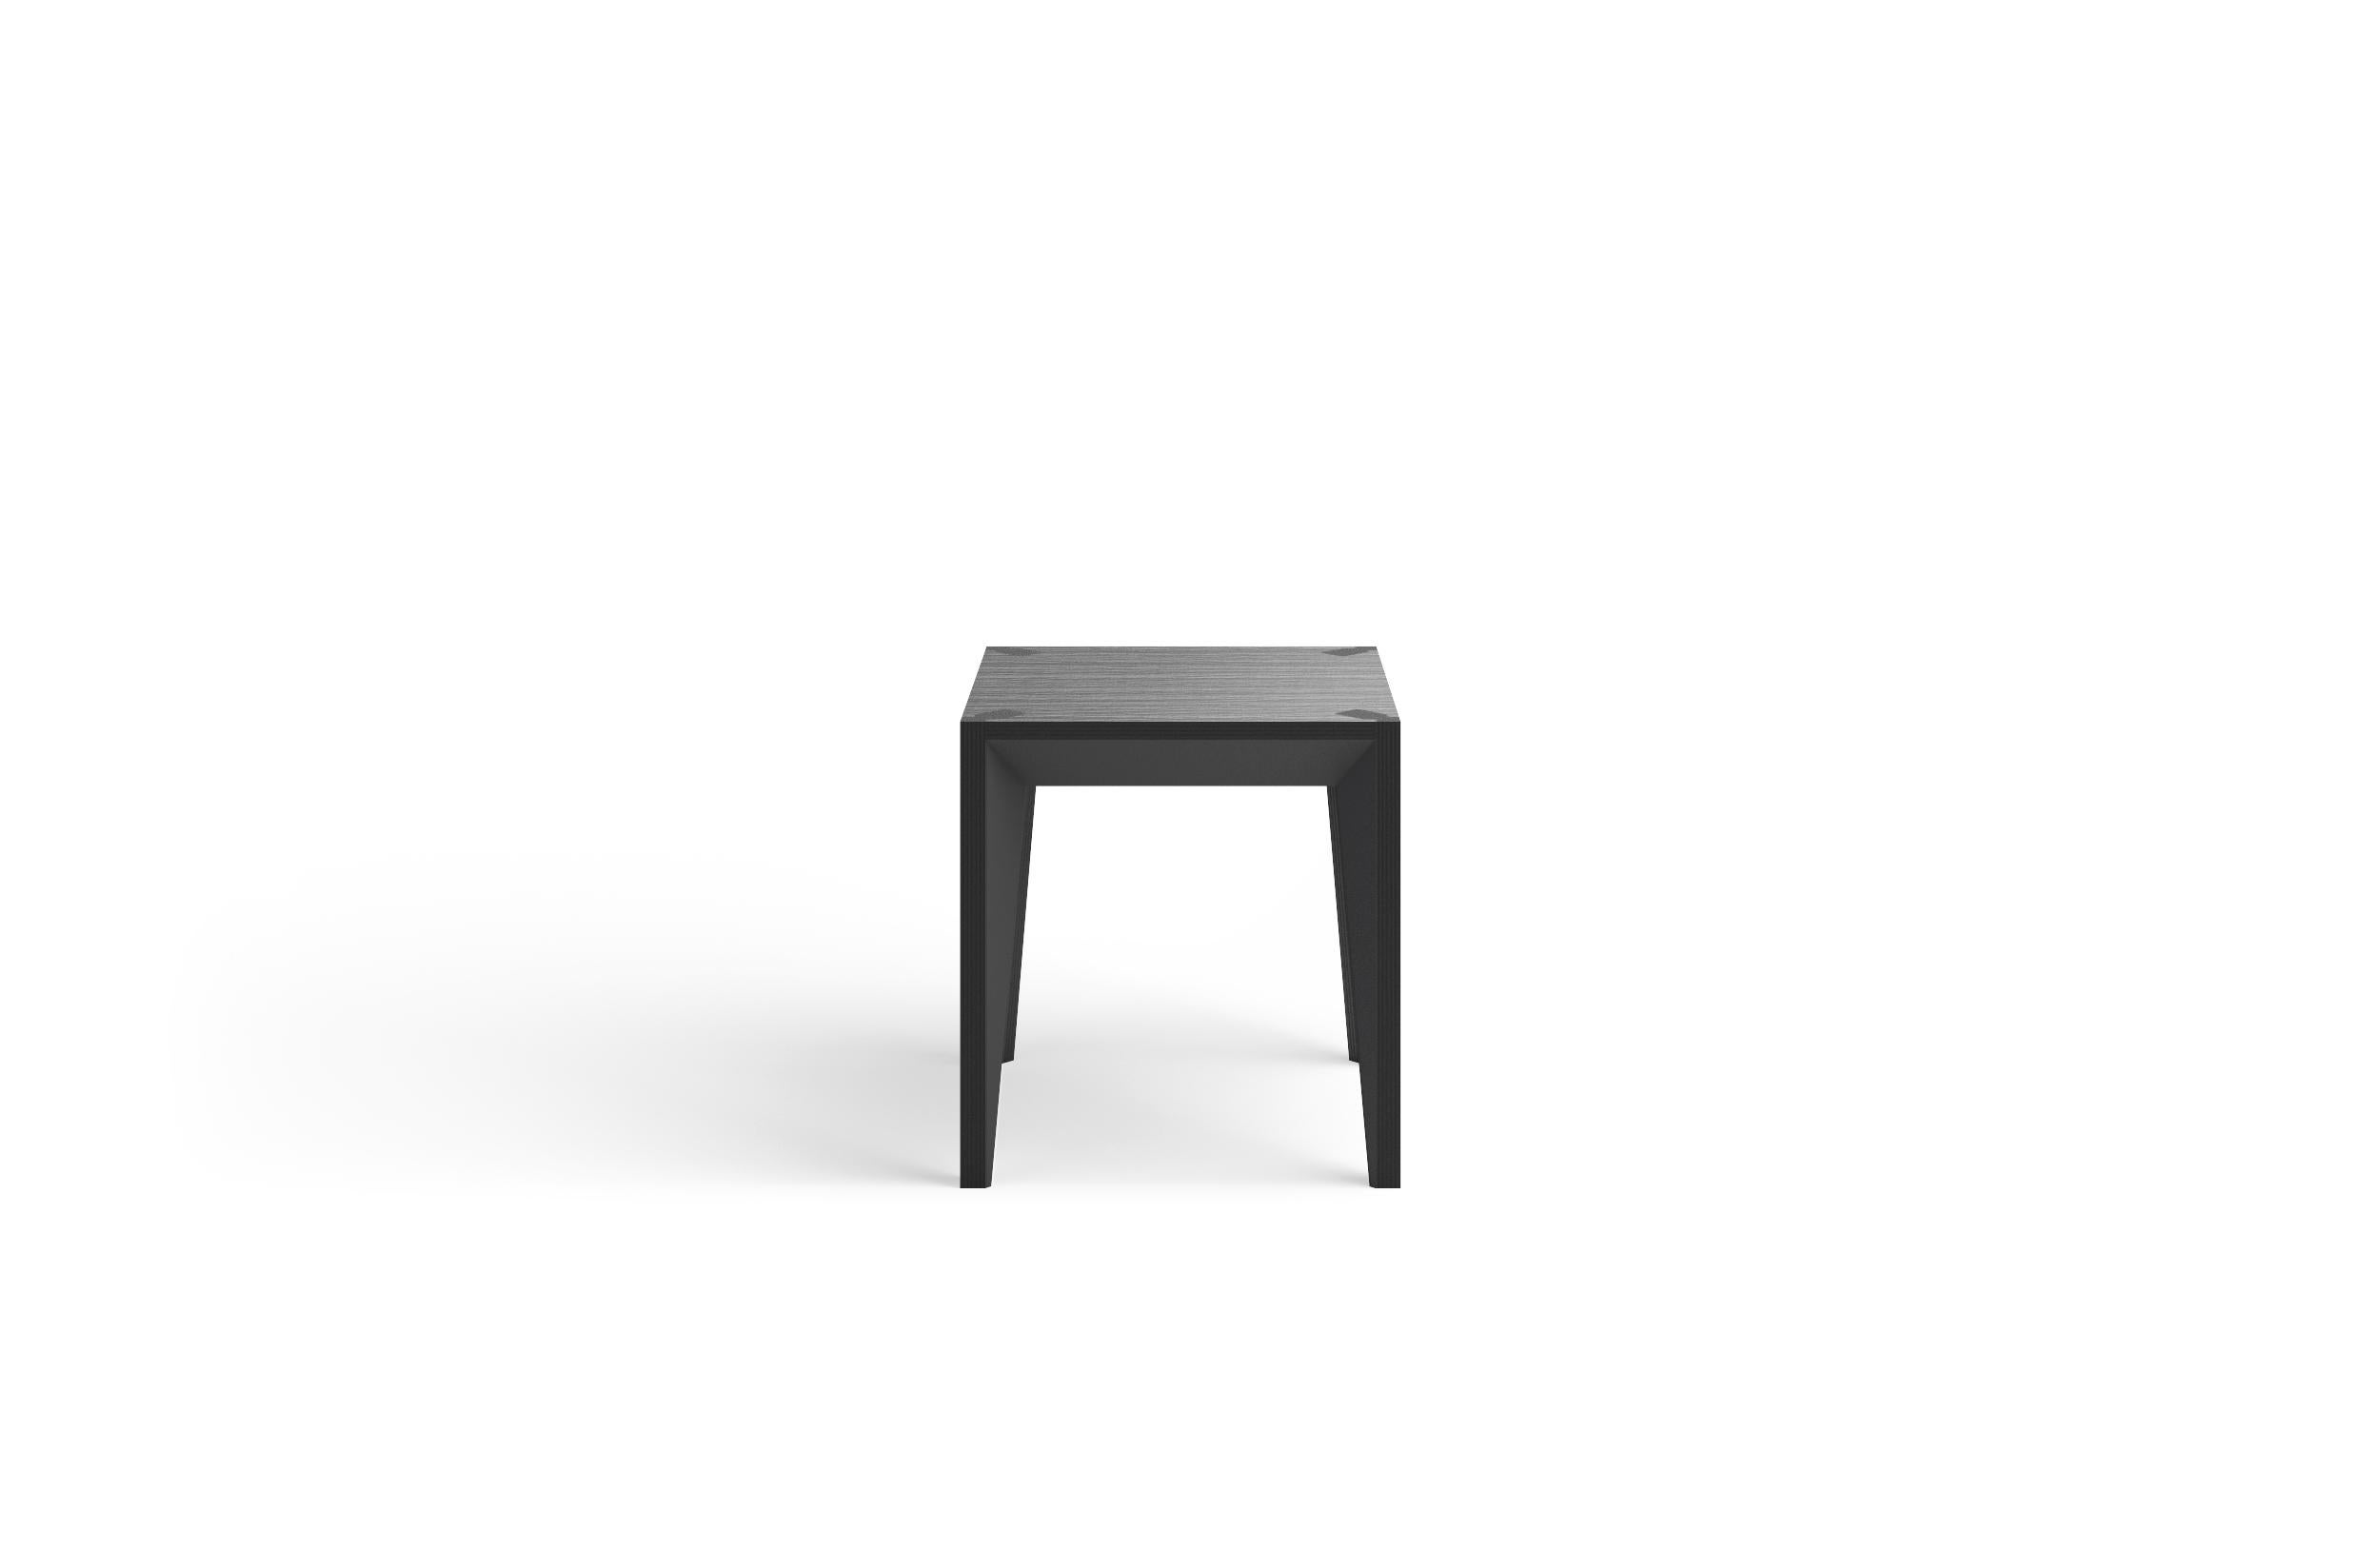 Minimaliste Table d'appoint MiMi entièrement noire en bois ébénisé de Miduny, fabriquée en Italie, plateau sculpté en vente